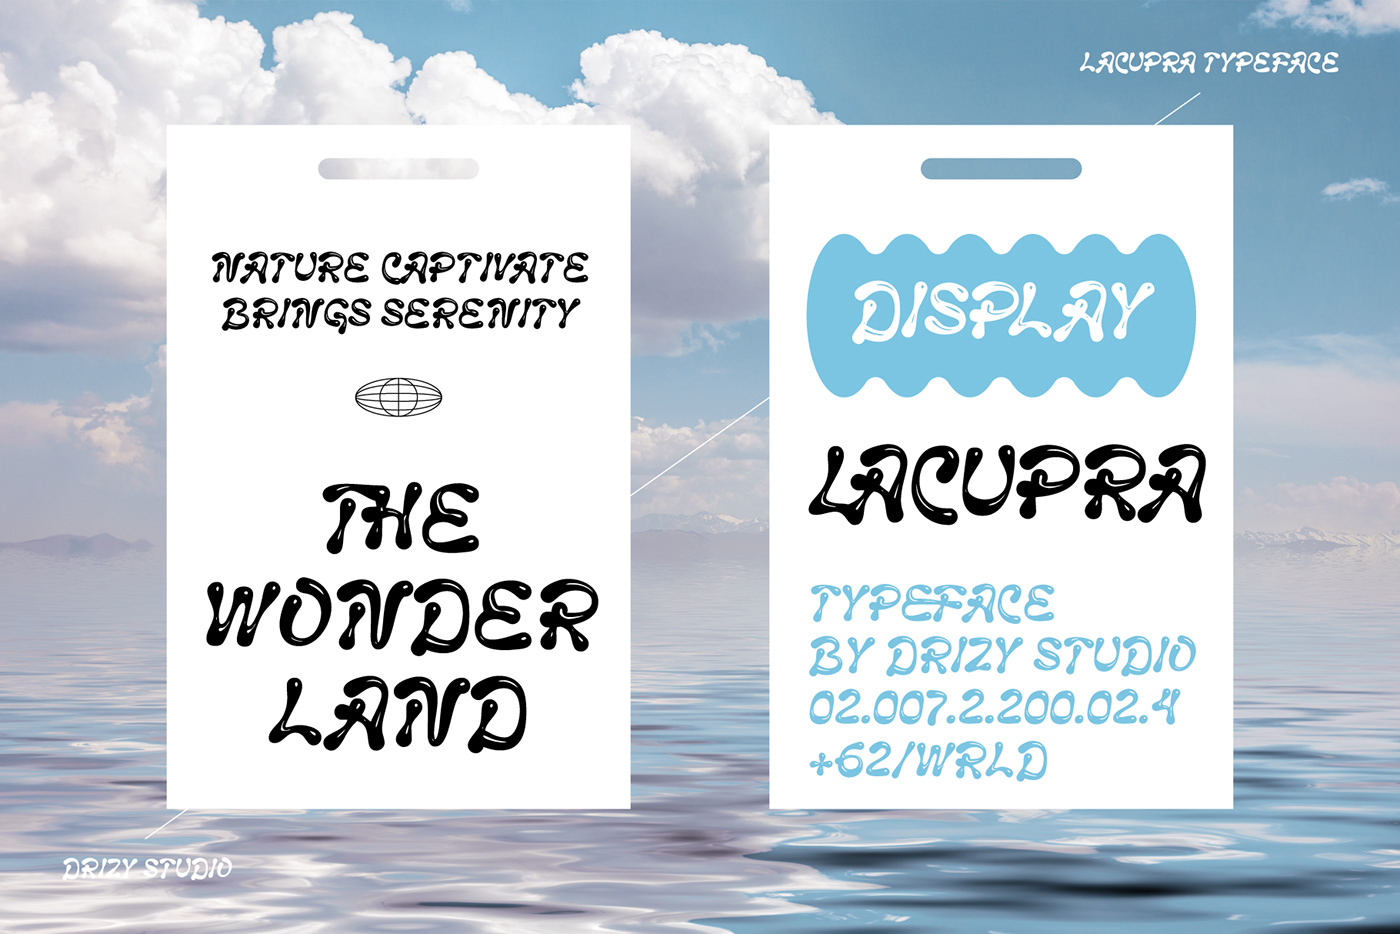 Lacupra – Liquid Bubble Display Font